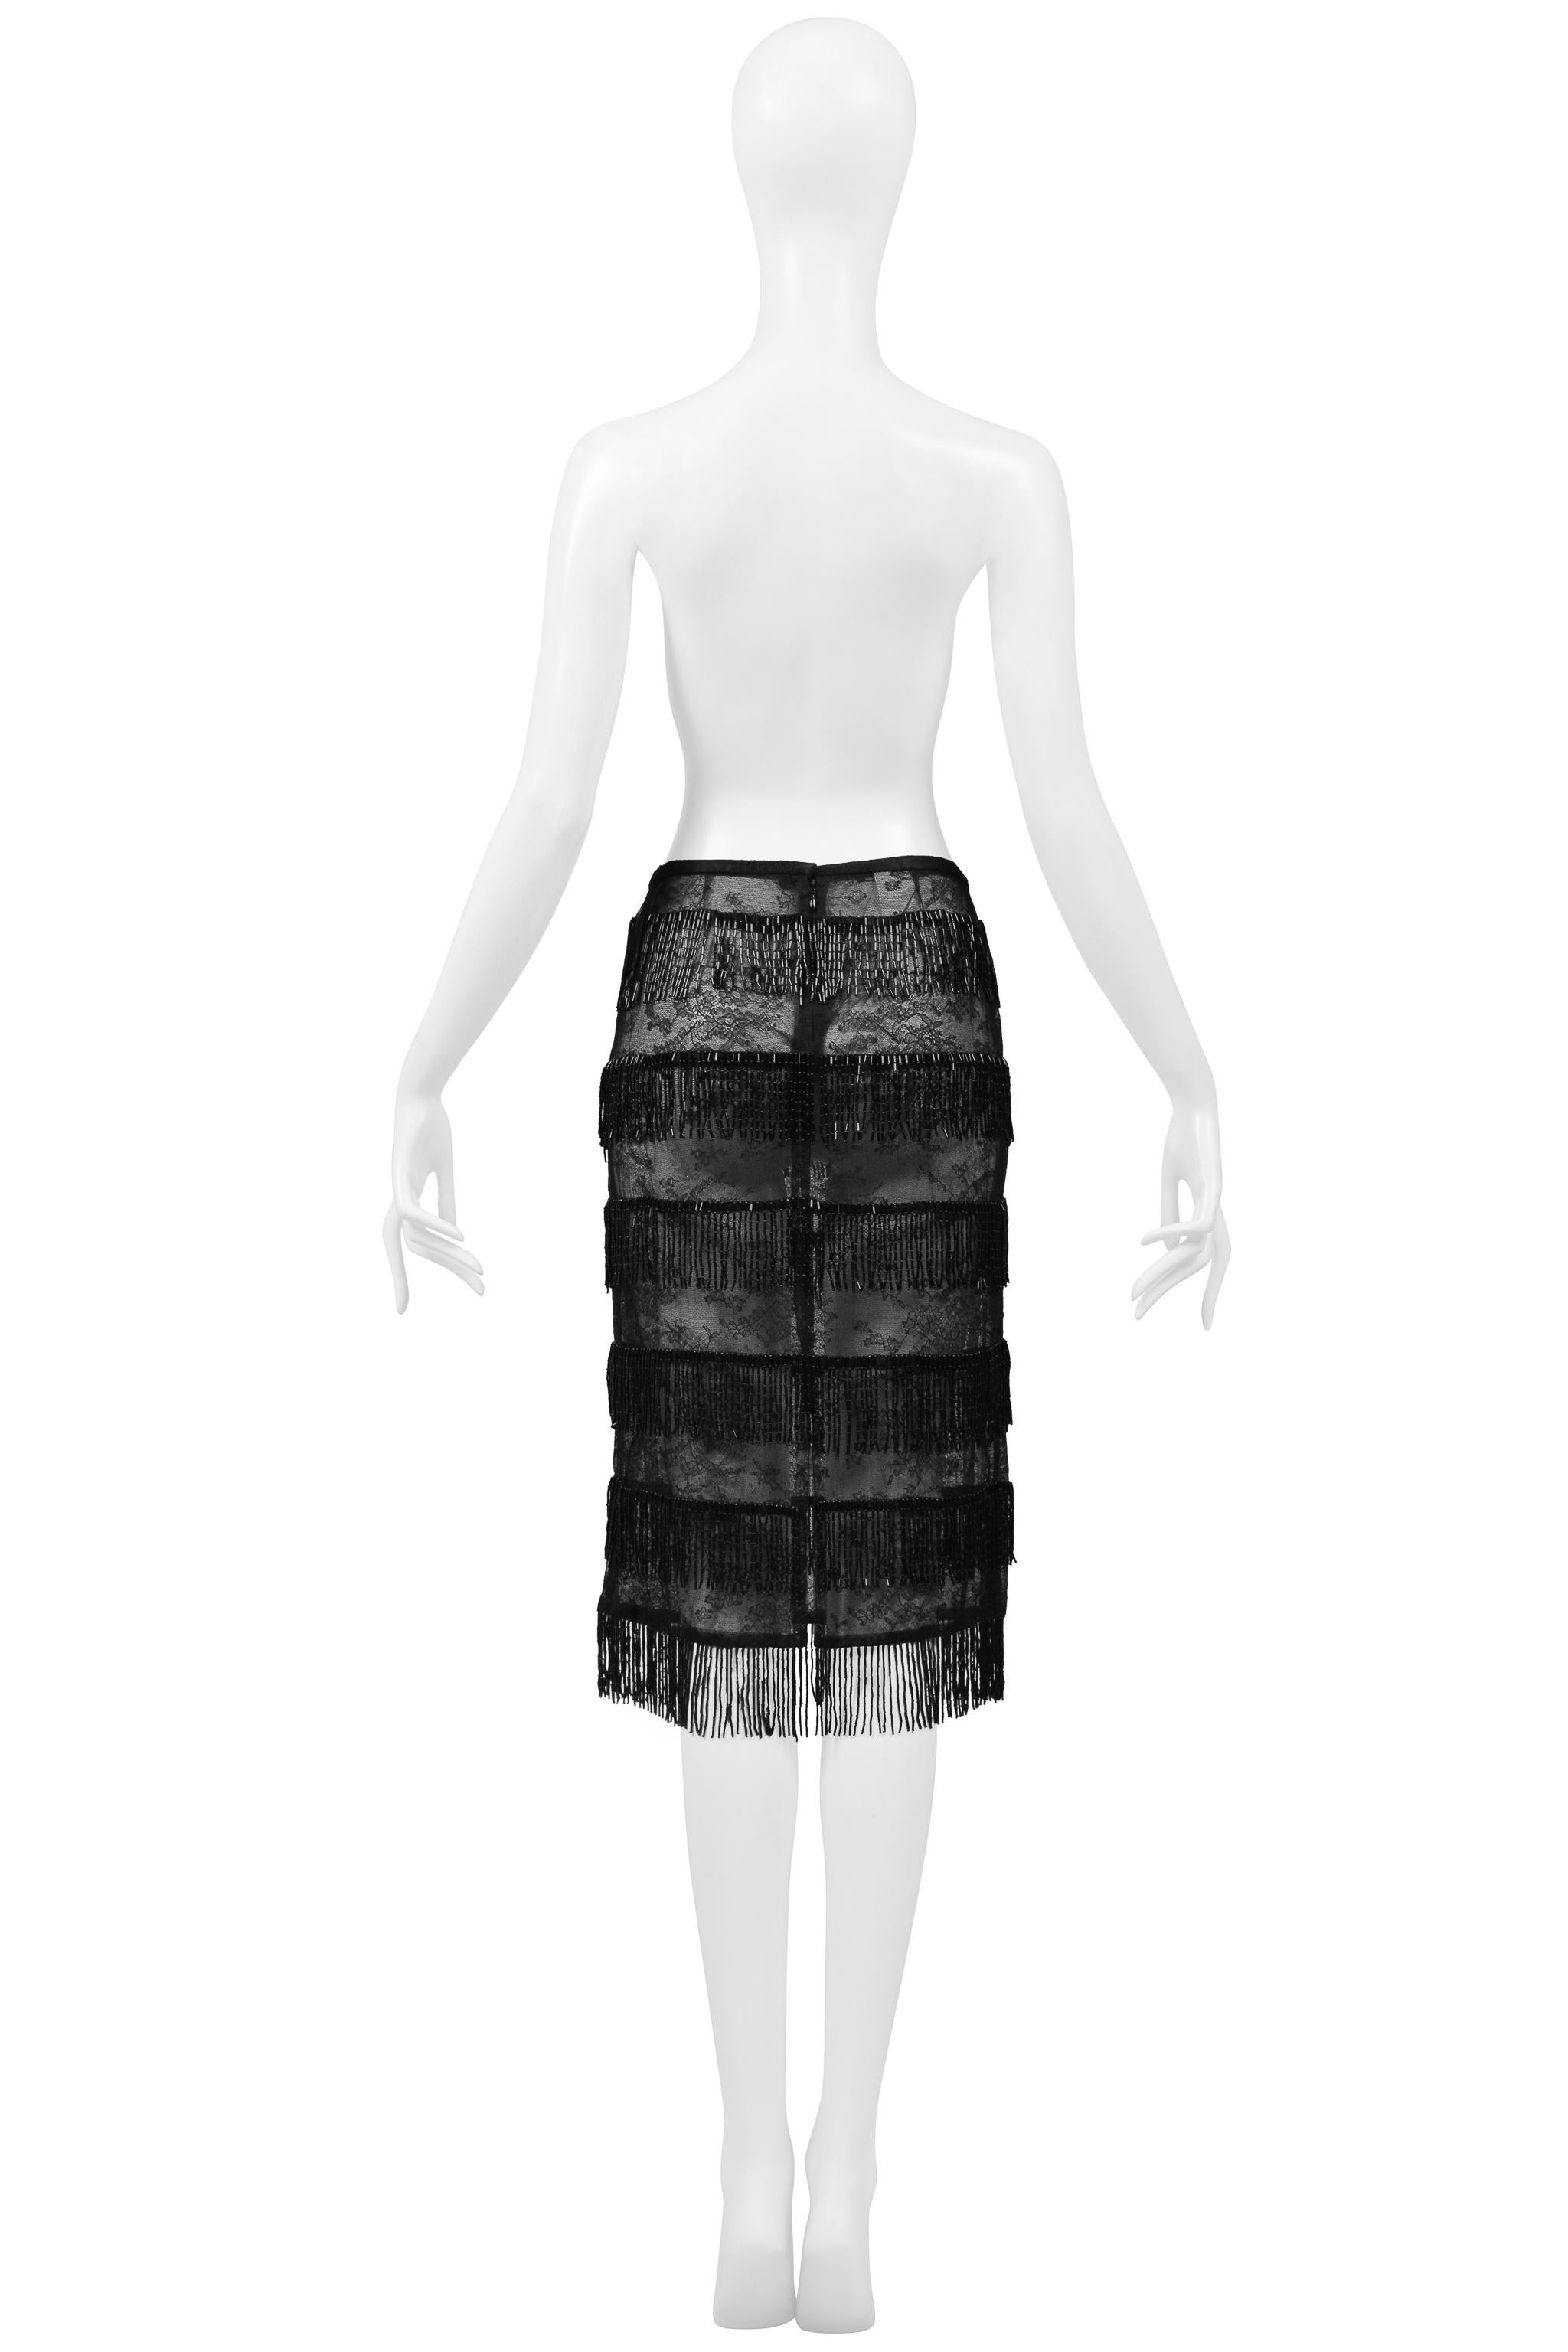 Dolce & Gabbana Black Sheer Skirt With Beaded Fringe SS 2000 For Sale 2